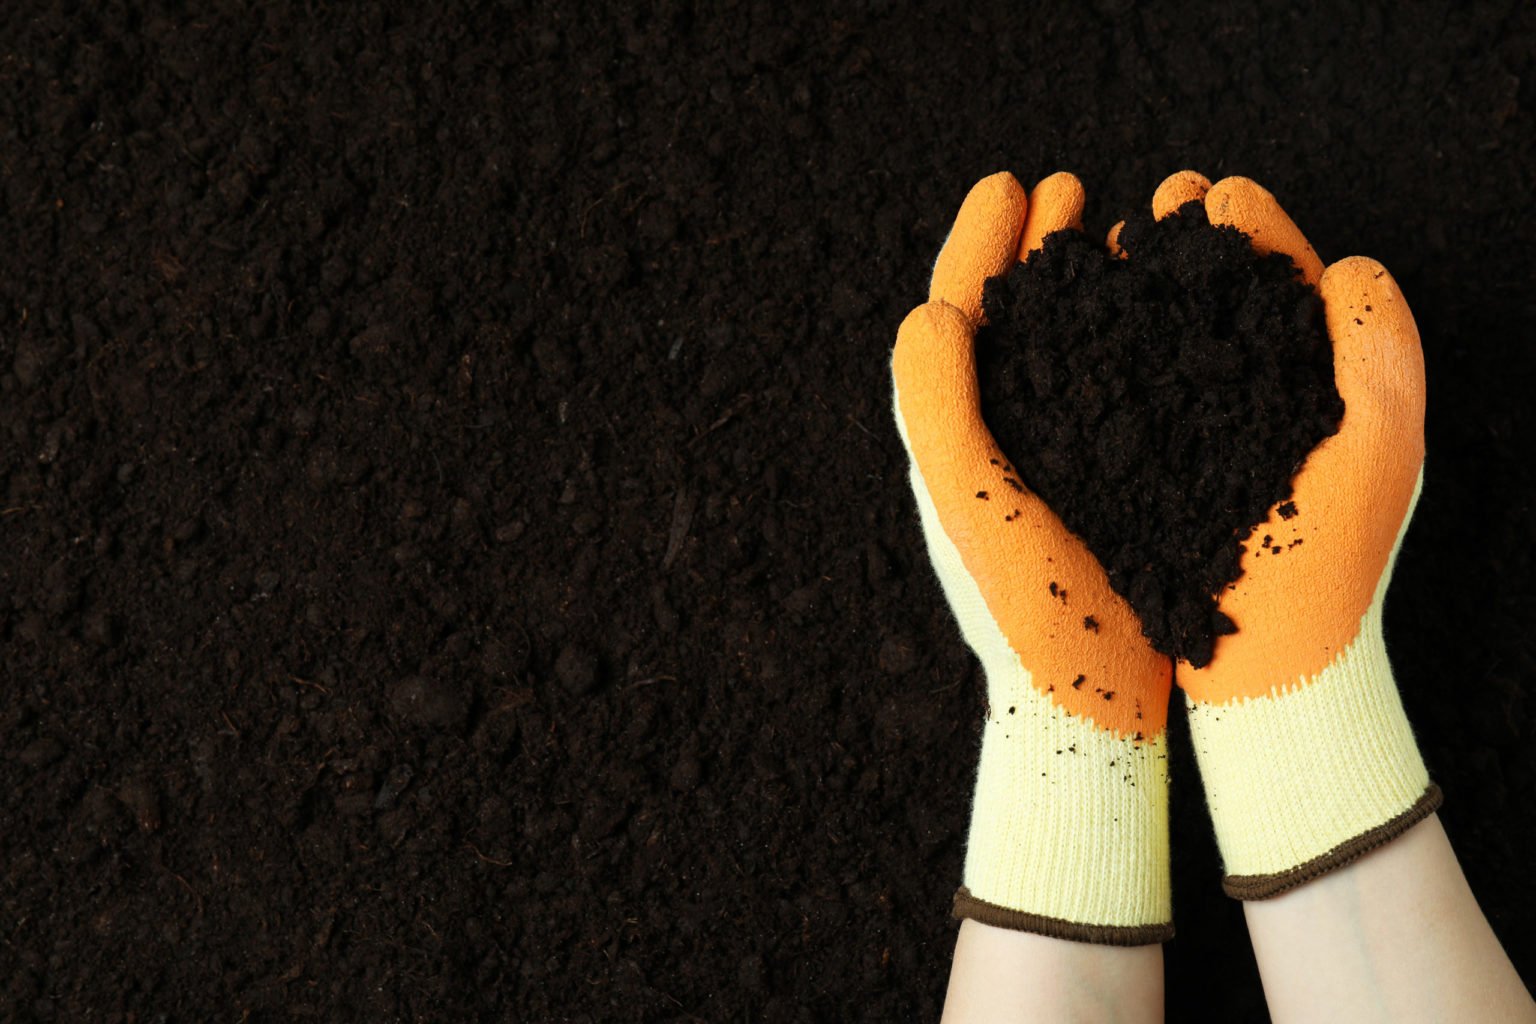 Hands in gloves holding soil